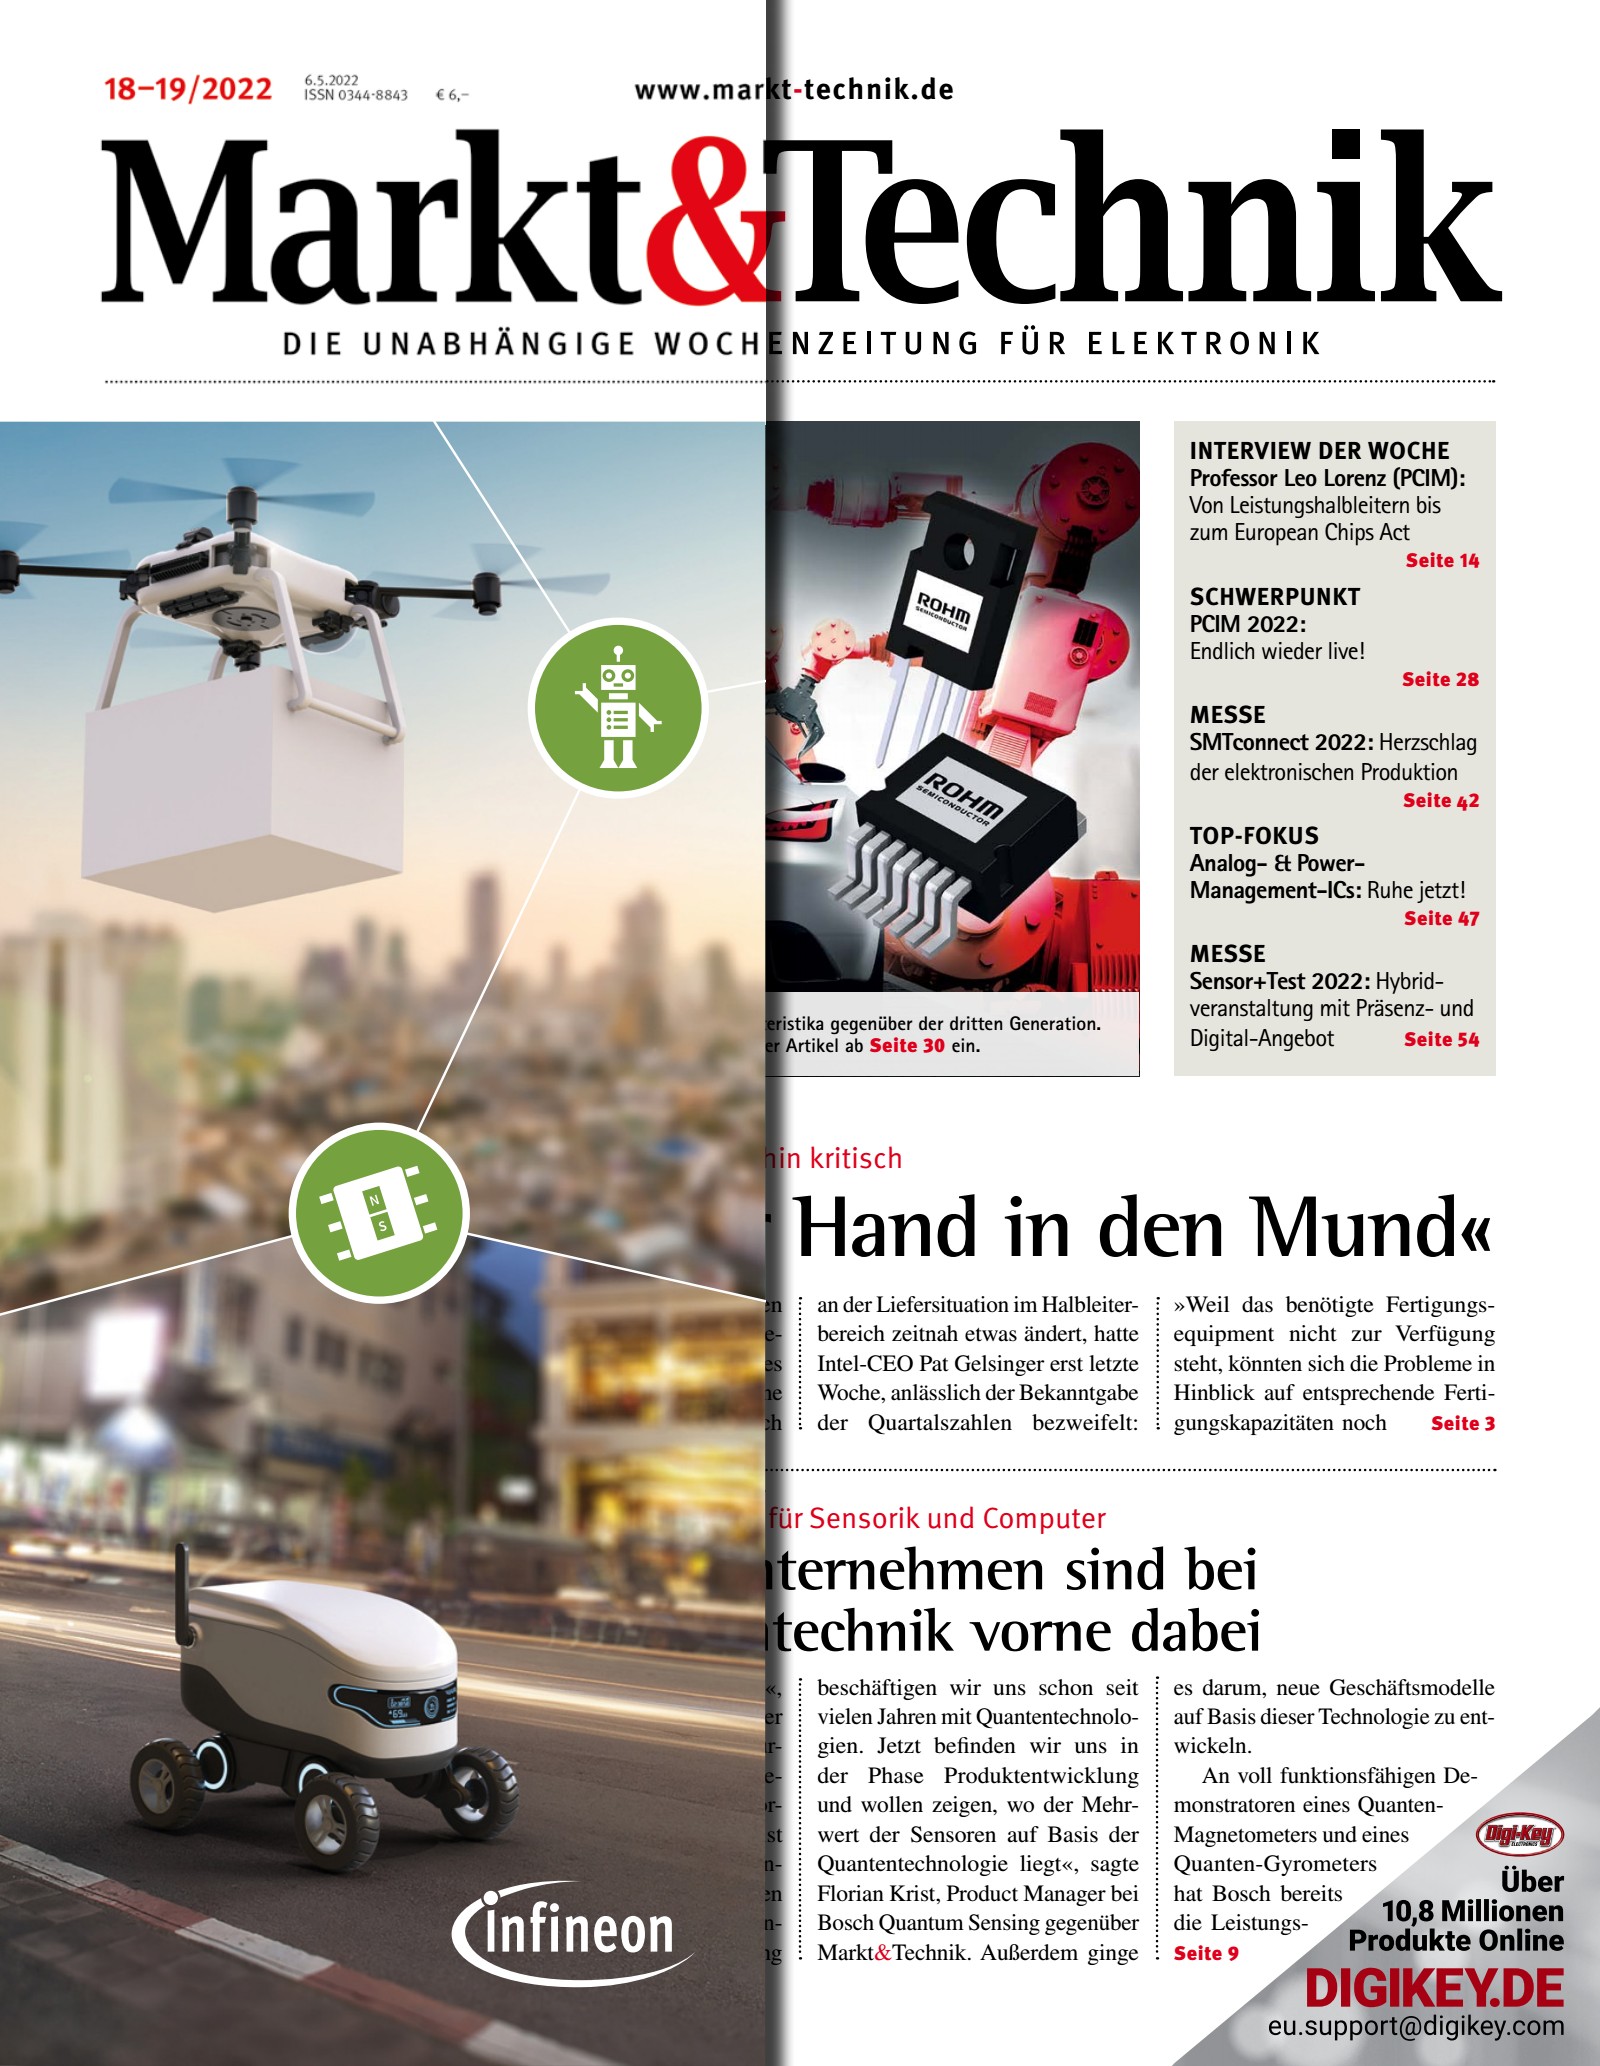 Markt&Technik 18-19/22 Digital